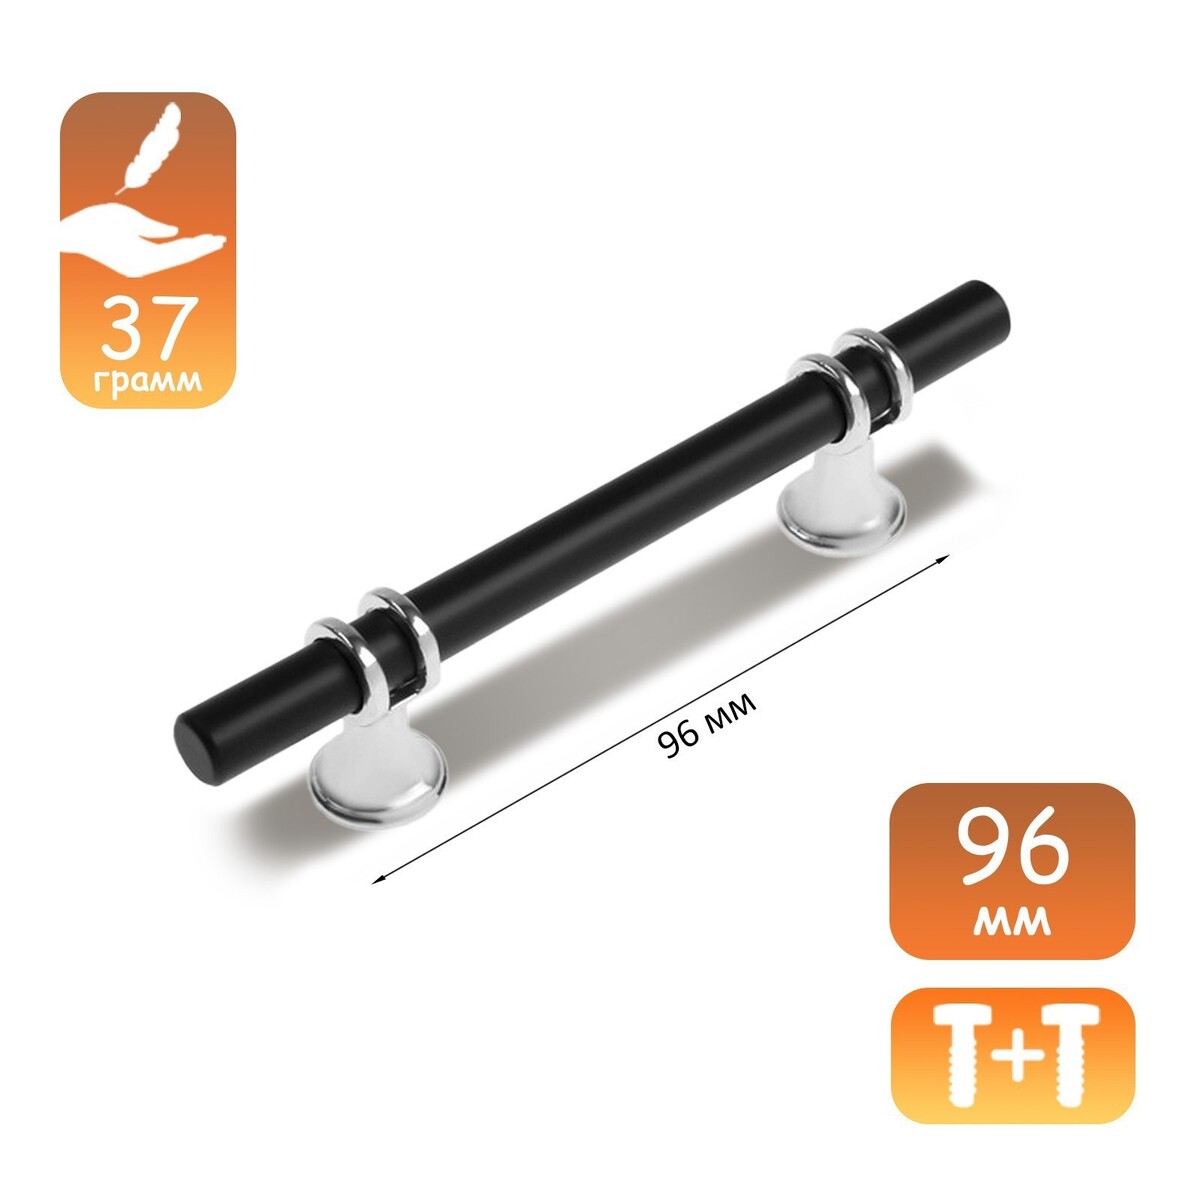 Ручка скоба cappio, м/о 96 мм, d=12 mm, пластик, цвет хром/черный аэратор zein регулировка потока вентилятор пластик сетка нерж прозрачный хром